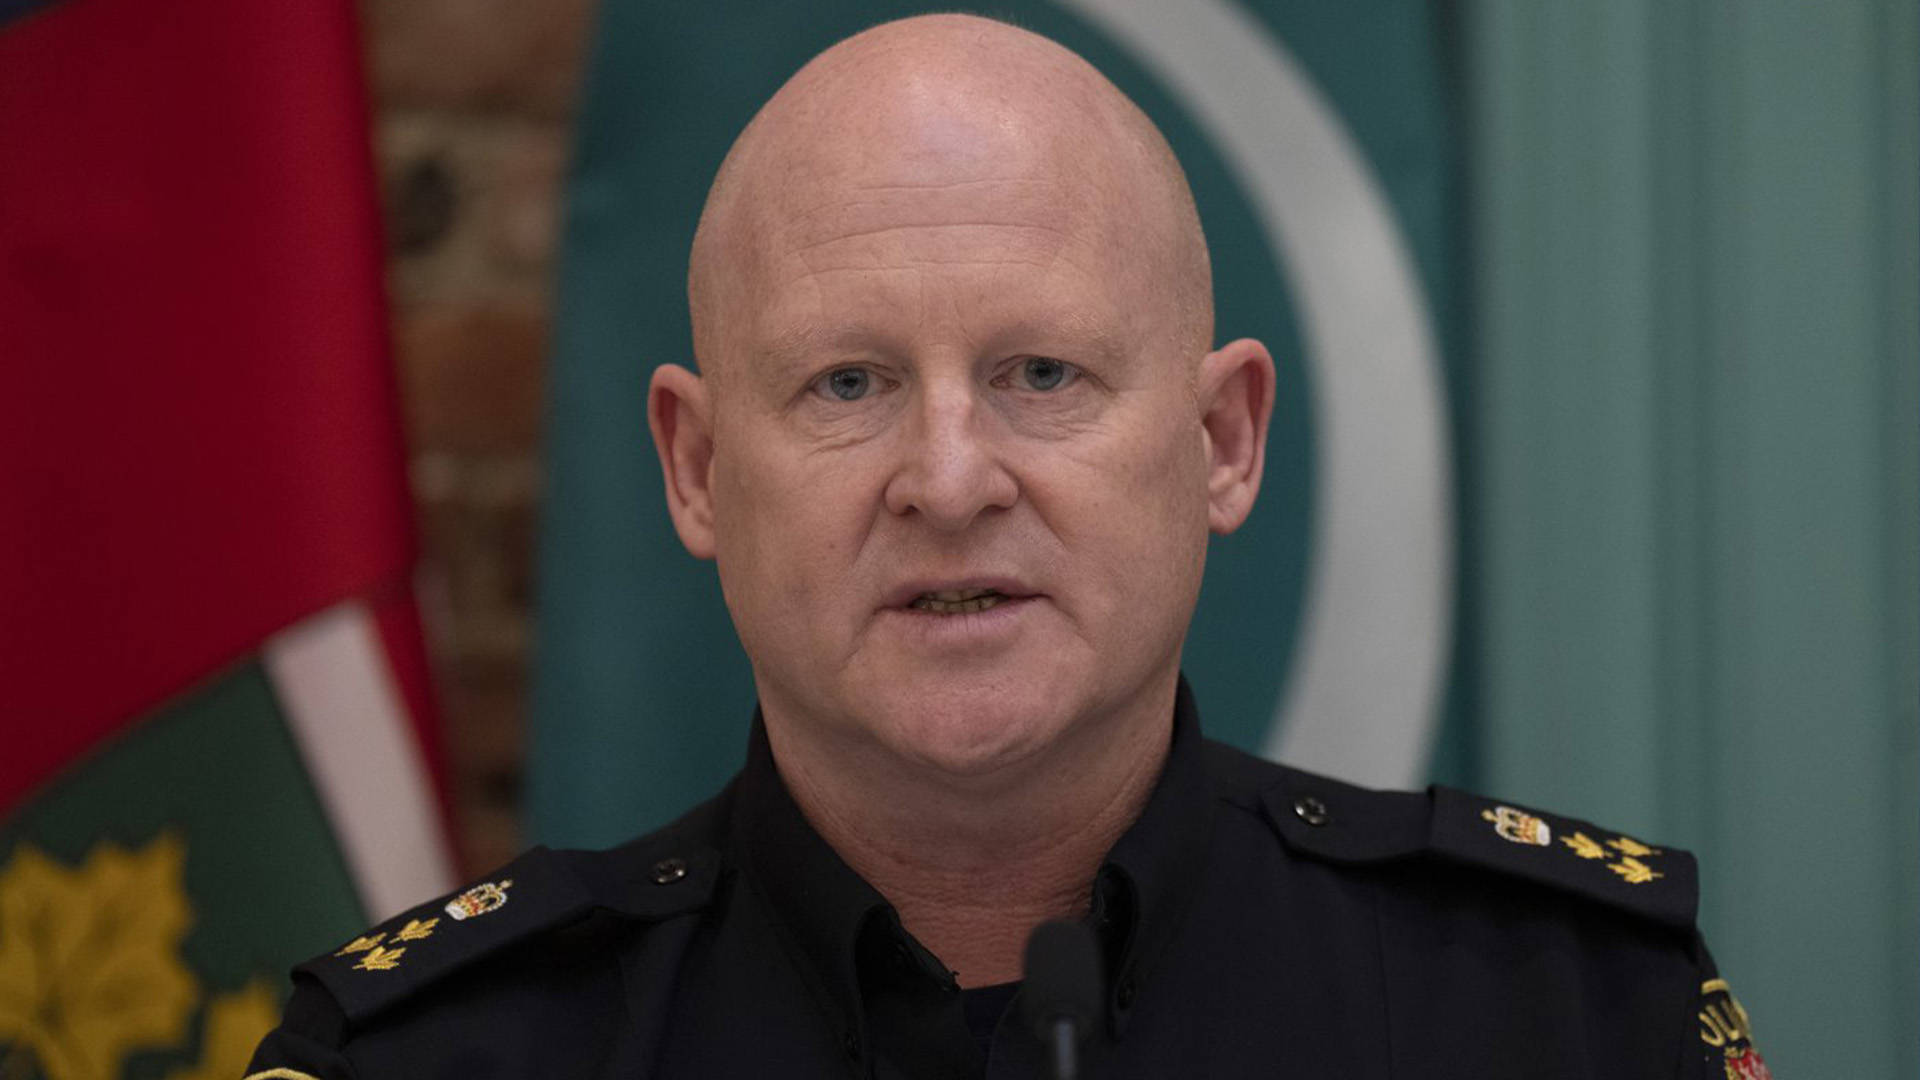 Le chef par intérim du Service de police d'Ottawa, Steve Bell, prend la parole lors d'une conférence de presse, le jeudi 28 avril 2022 à Ottawa.